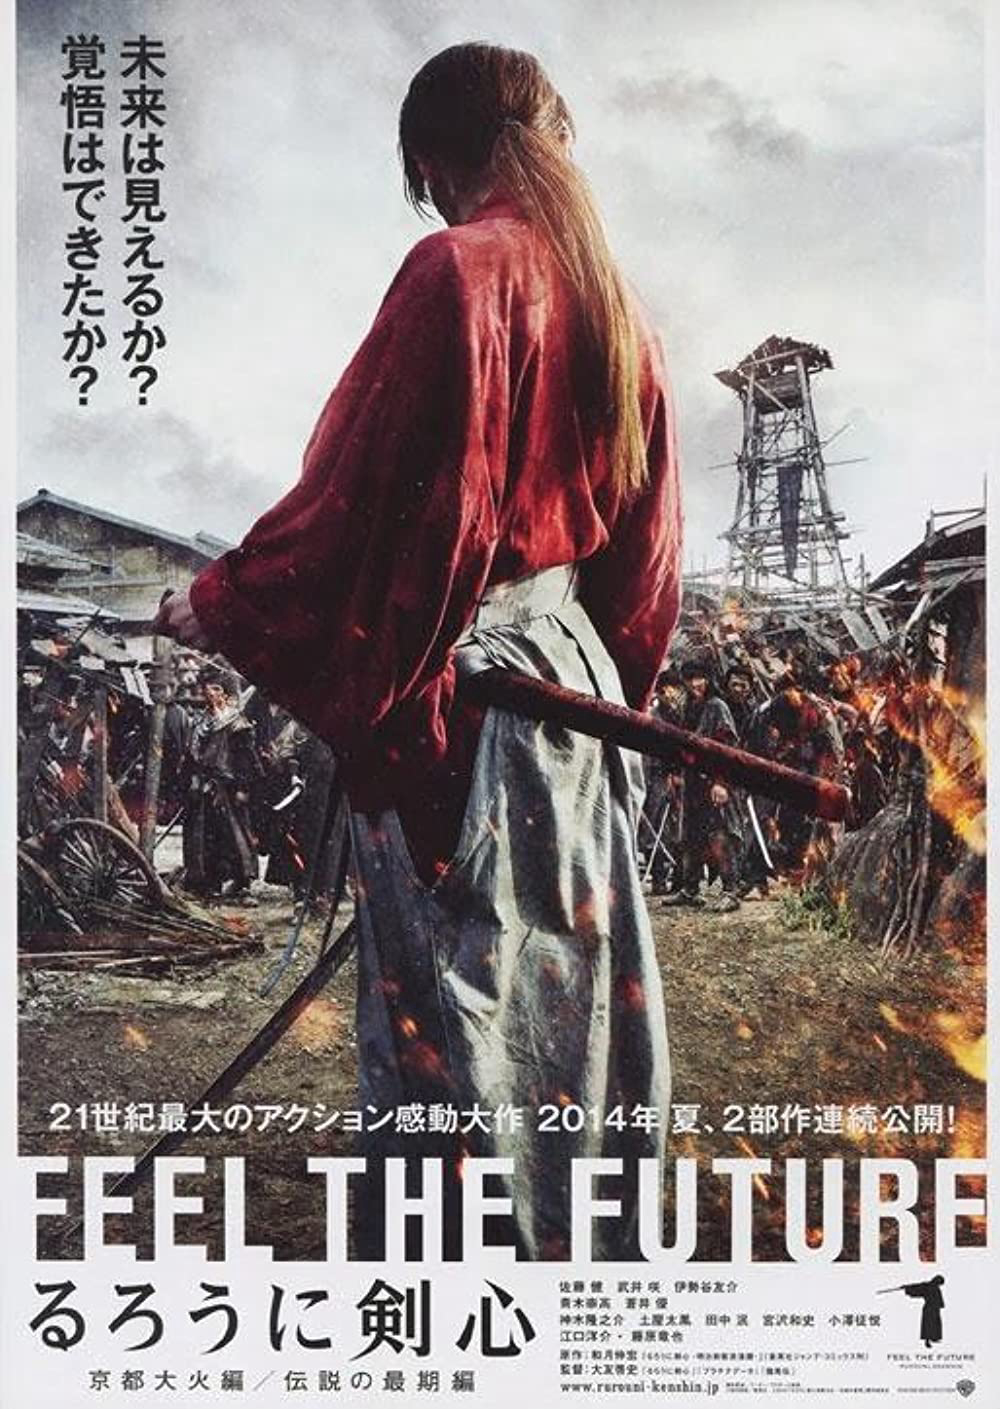 Xem Phim Rurouni Kenshin: Kết Thúc Một Huyền Thoại - Rurouni Kenshin: The Legend Ends - online truc tuyen vietsub mien phi hinh anh 1